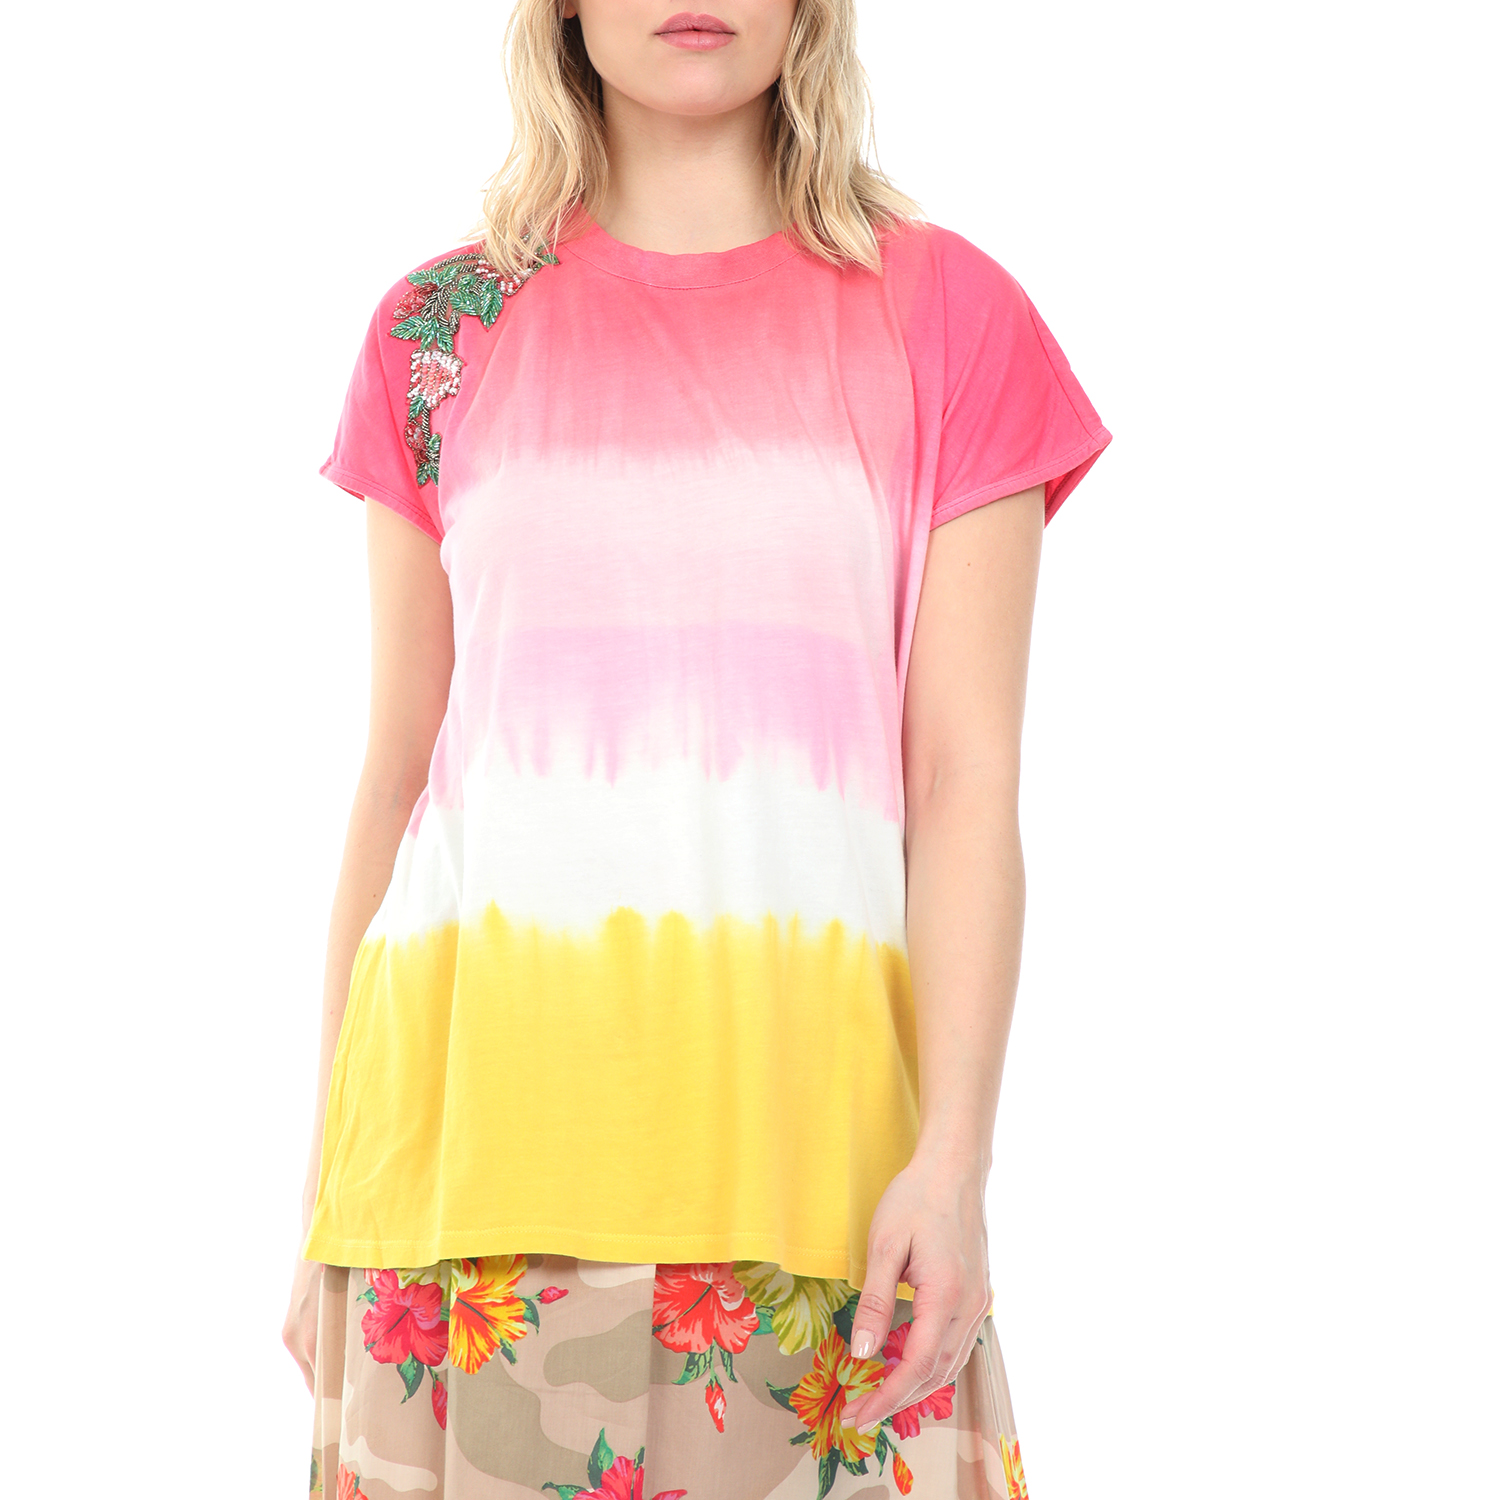 TWIN-SET – Γυναικεία μπλούζα TWIN-SET ροζ κίτρινη